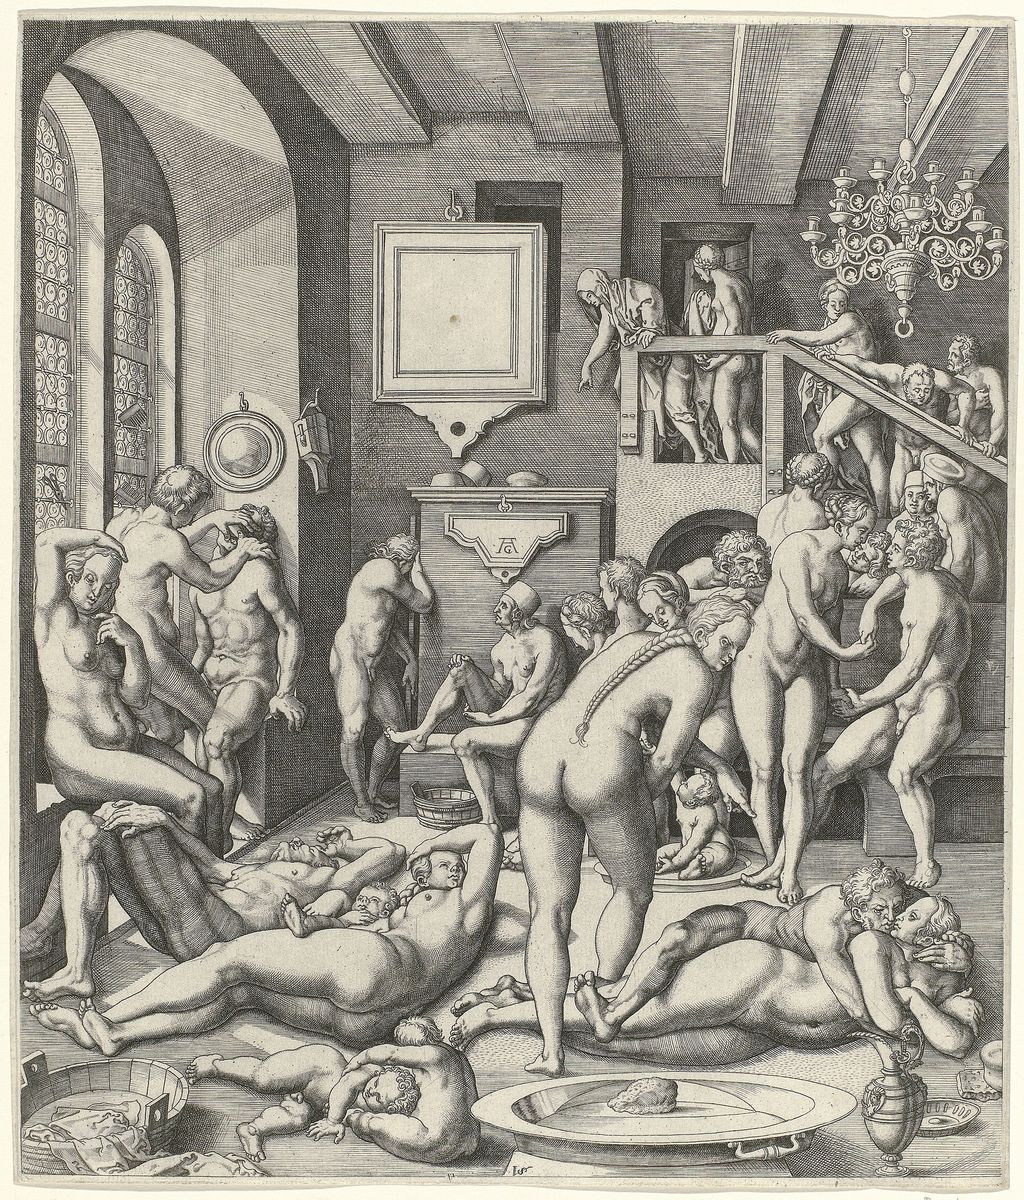 Der Kupferstich des Inneren eines Badehauses mit Männern und Frauen stammt von dem Künstler Allaert Claesz, der das bekannte Albrecht-Dürer-Monogramm »AD« mit »AC« kopiert. Entstehung zwischen 1534 und 1562. Rijksmuseum Amsterdam. Public domain